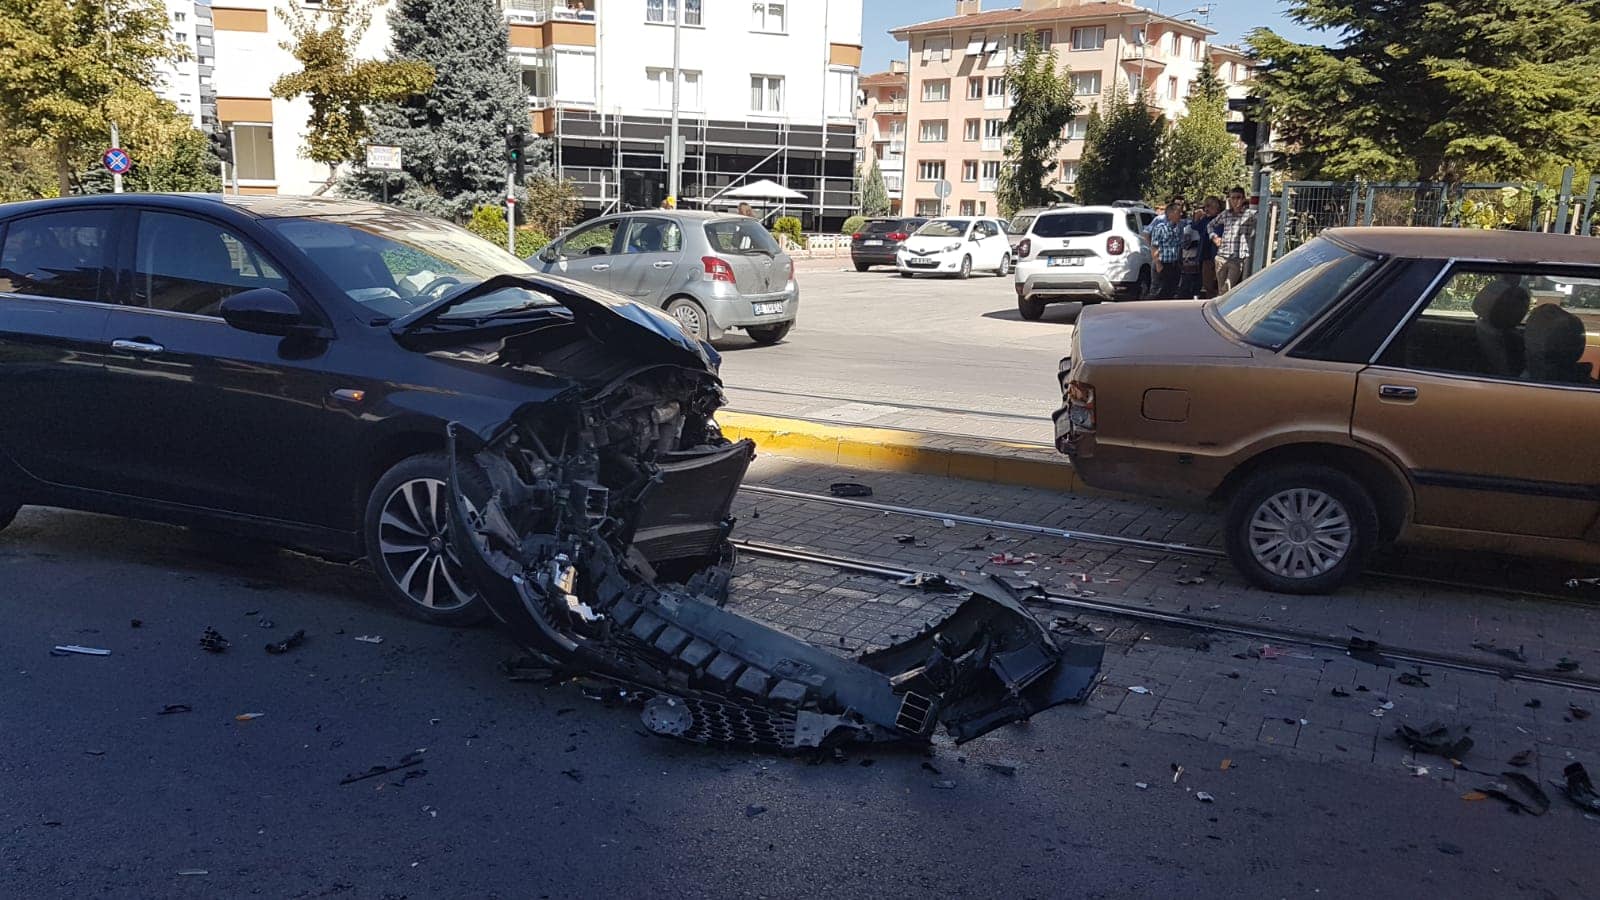 Eskişehir'de meydana gelen trafik kazasında 4 kişi yaralandı. 